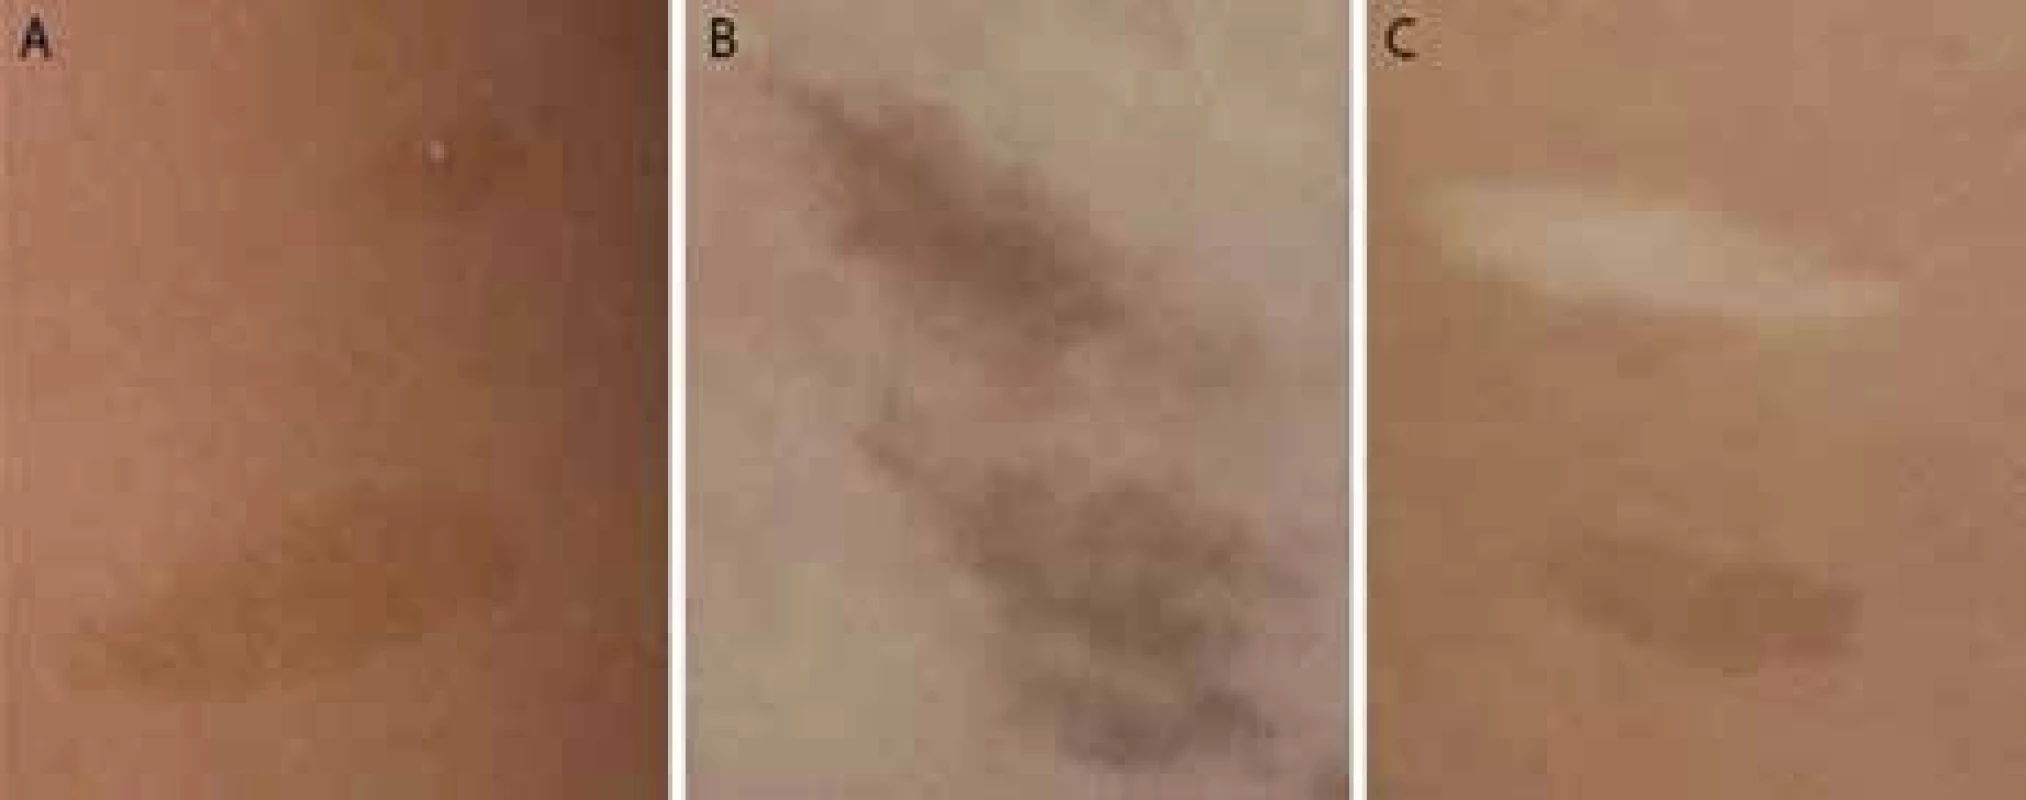 A. Pravidelné okraje a pravidelne rozložená pigmentácia u dieťaťa s NF1; 1B. Hyperpigmentácie s difúznymi okrajmi a nepravidelnou pigmentáciou u dieťaťa s CMMR-D syndrómom; 1C. Hyper- a hypopigmentované kožné makuly u dieťaťa s CMMR-D syndrómom.